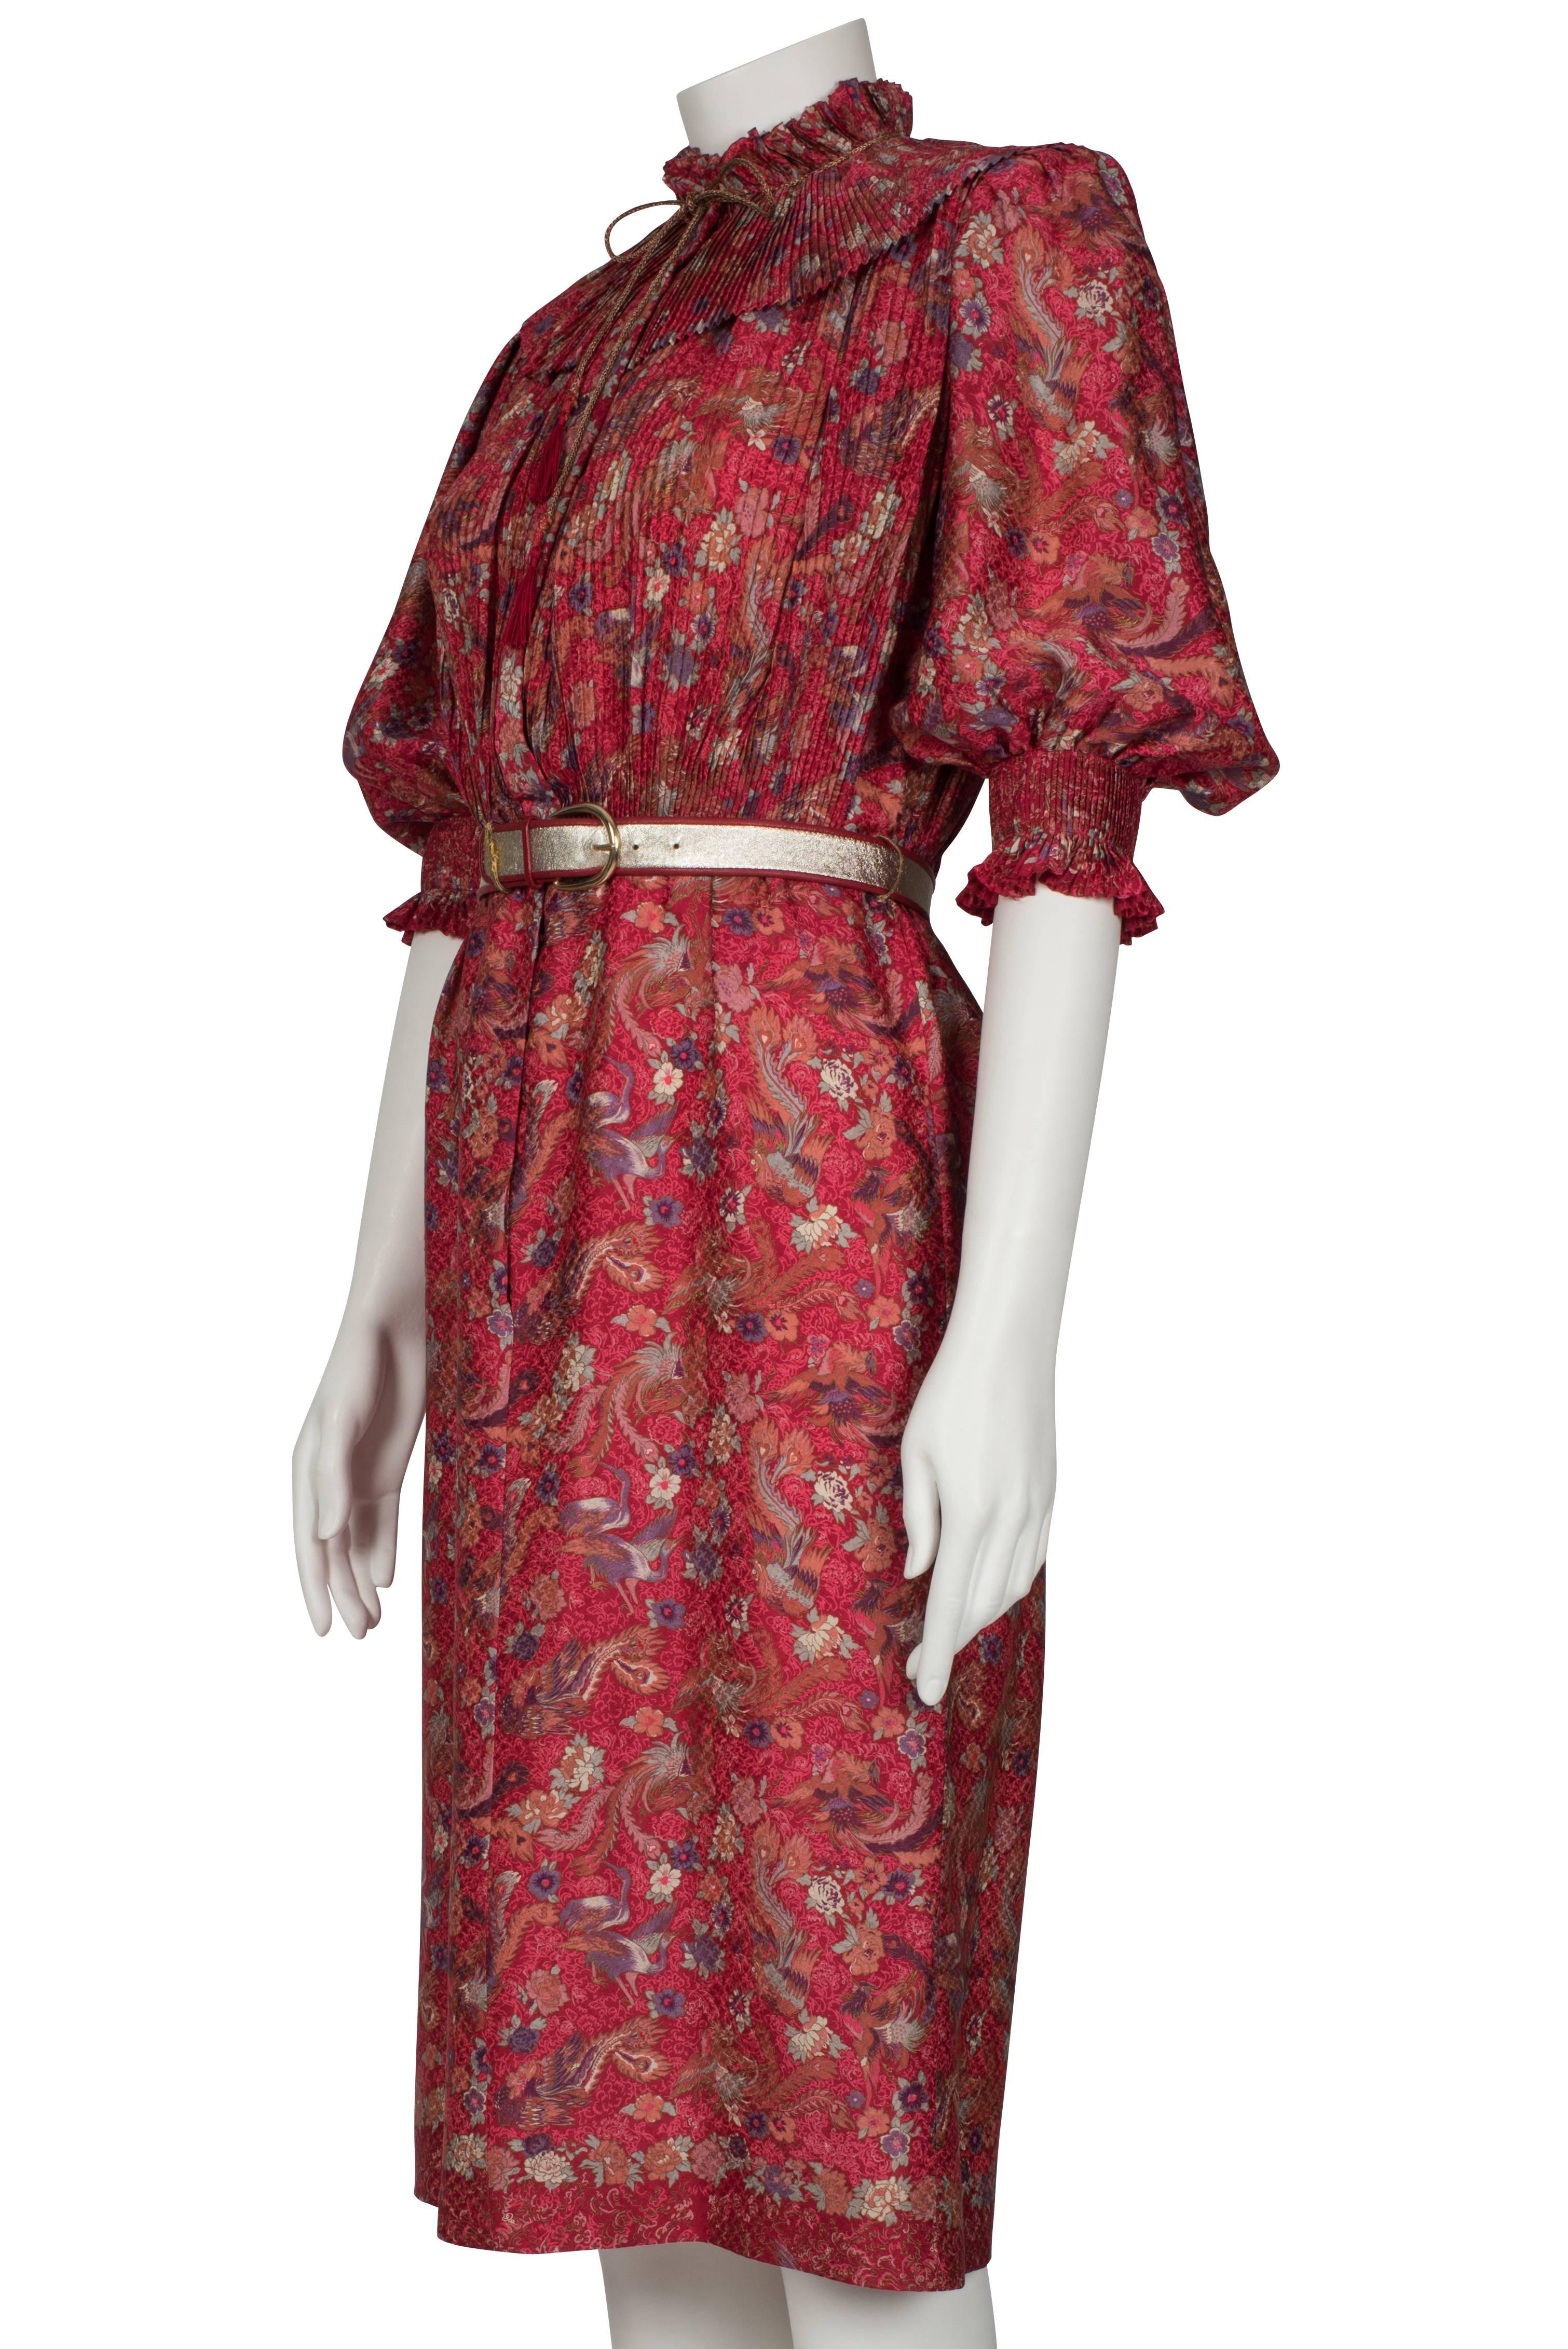 Women's 1980's Emanuel Ungaro Crimson Herron Print Dress & Jacket For Sale